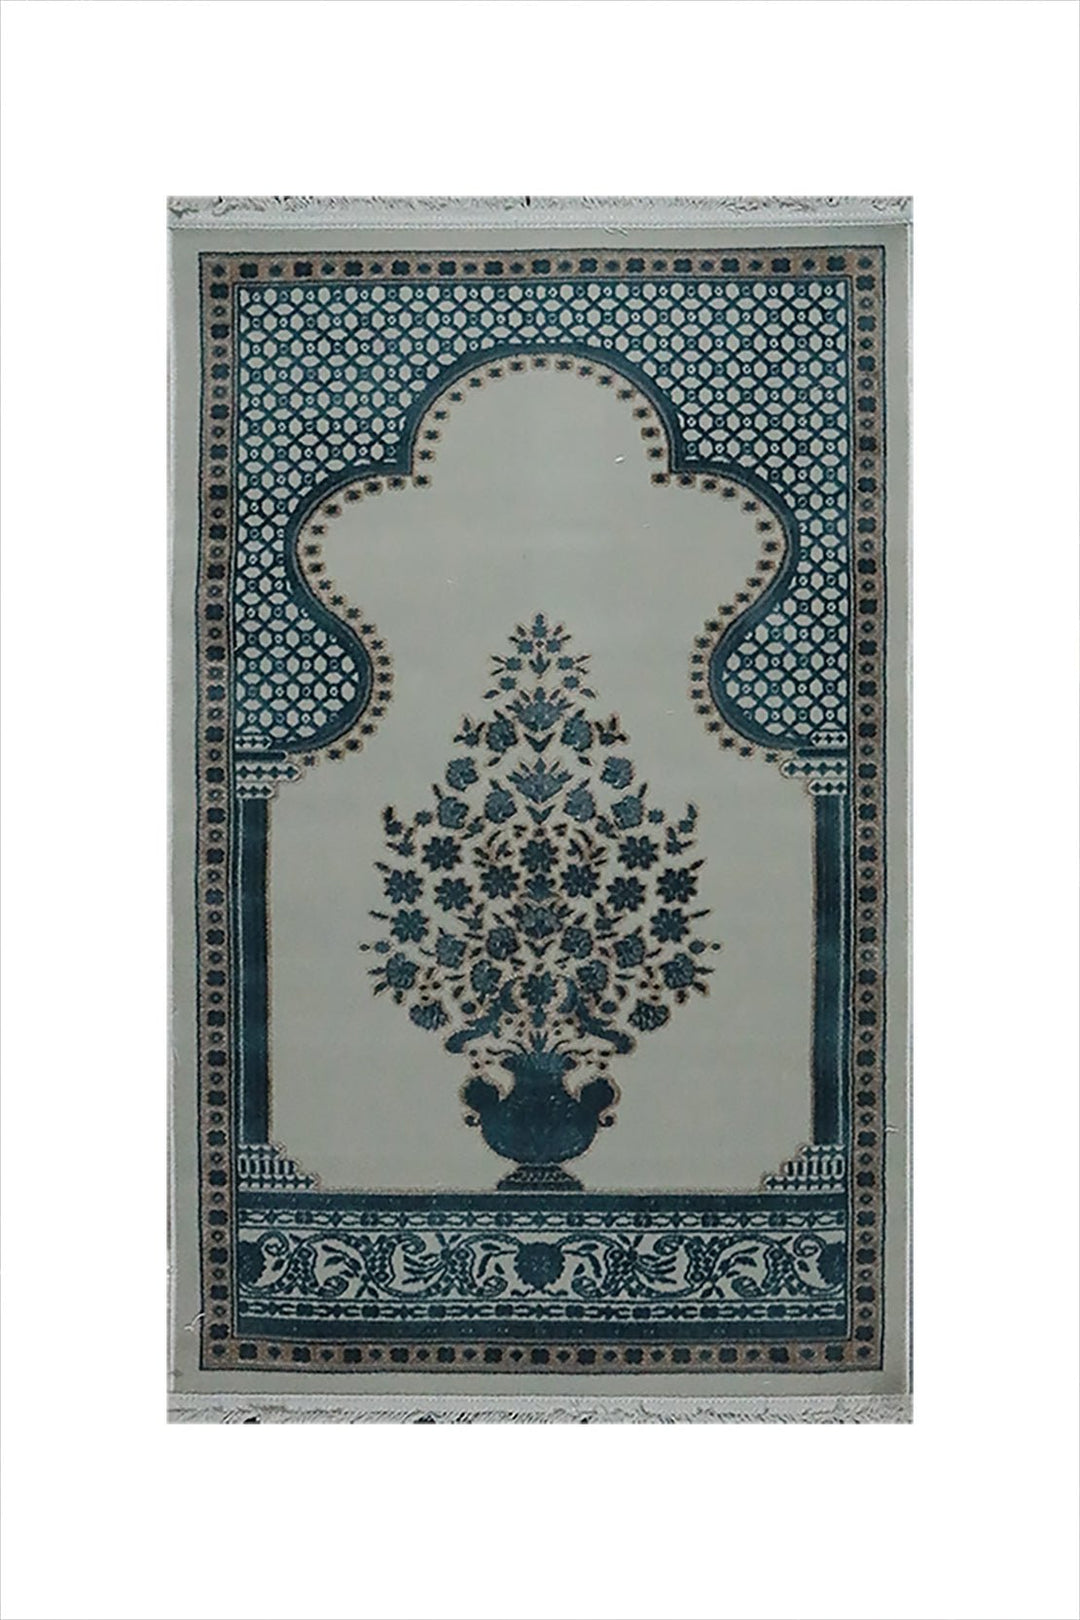 Turkish Bamboo Sajjadeh Janamaz - 2.6 x 3.9 FT - Blue and Gray - V Surfaces